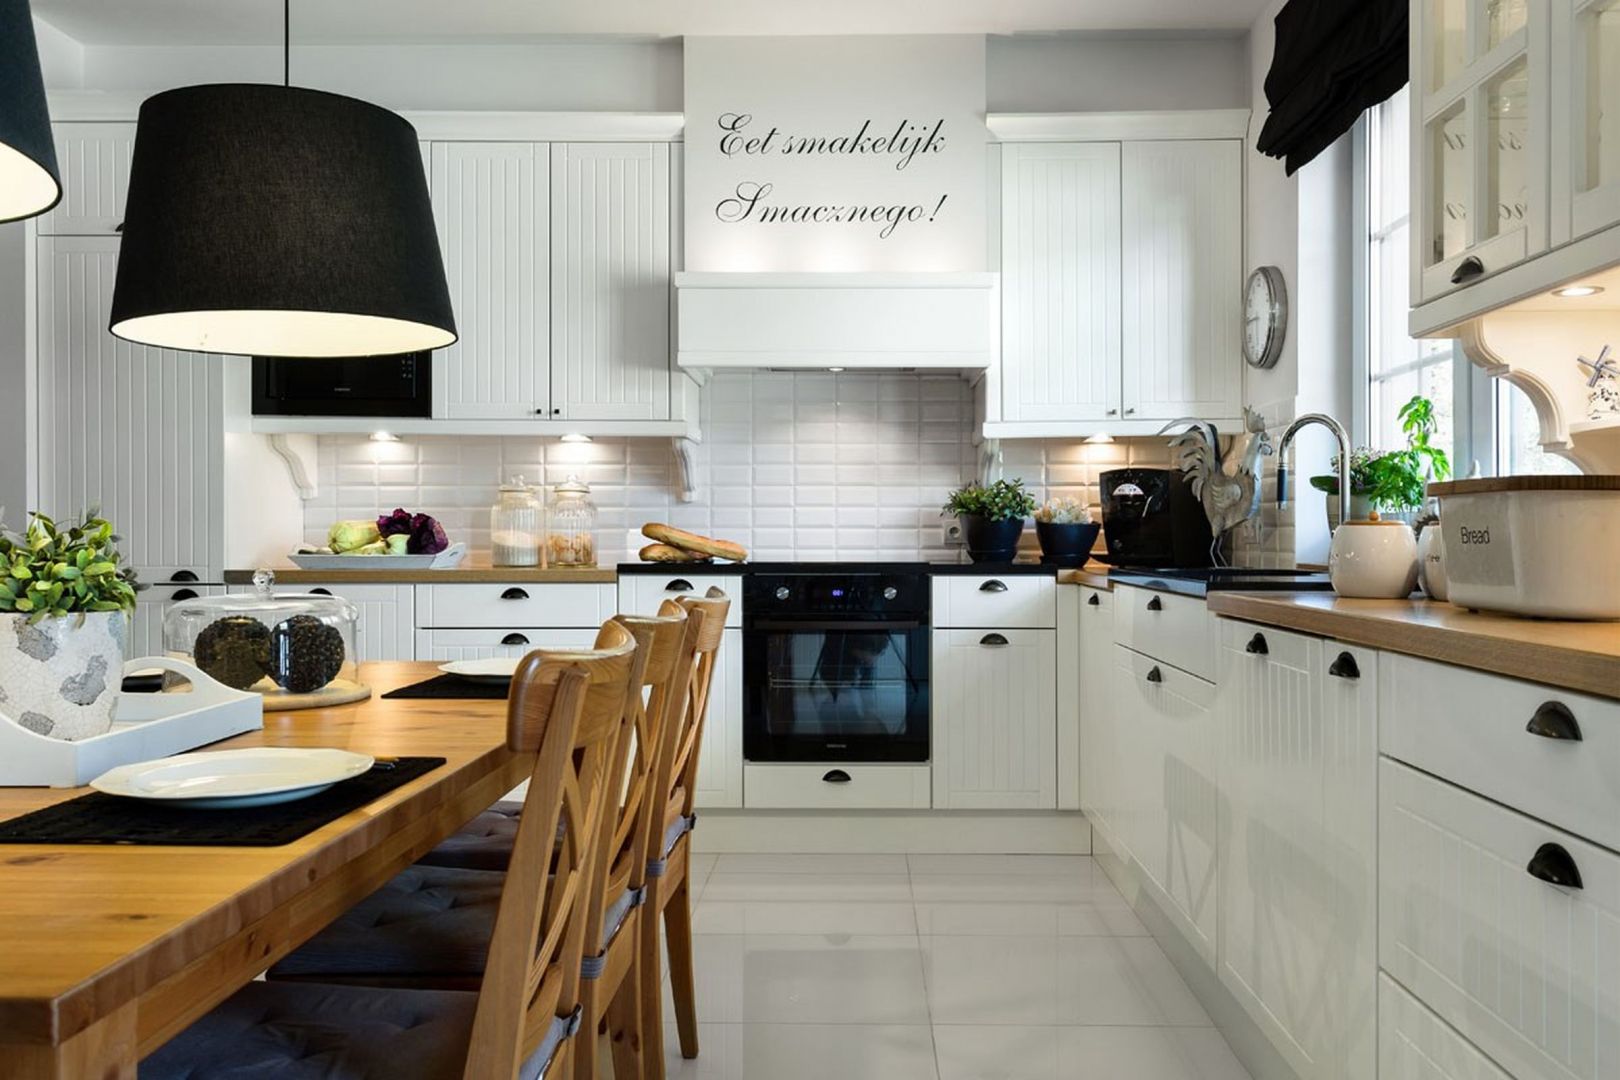 Projekt kuchni w matowym odcieniu bieli, którego elementy zdobne - pionowe frezowania oraz uchwyty stylistycznie nawiązują do tradycyjnych wnętrz w stylu skandynawskim. Fot. Pracownia Mebli Vigo.